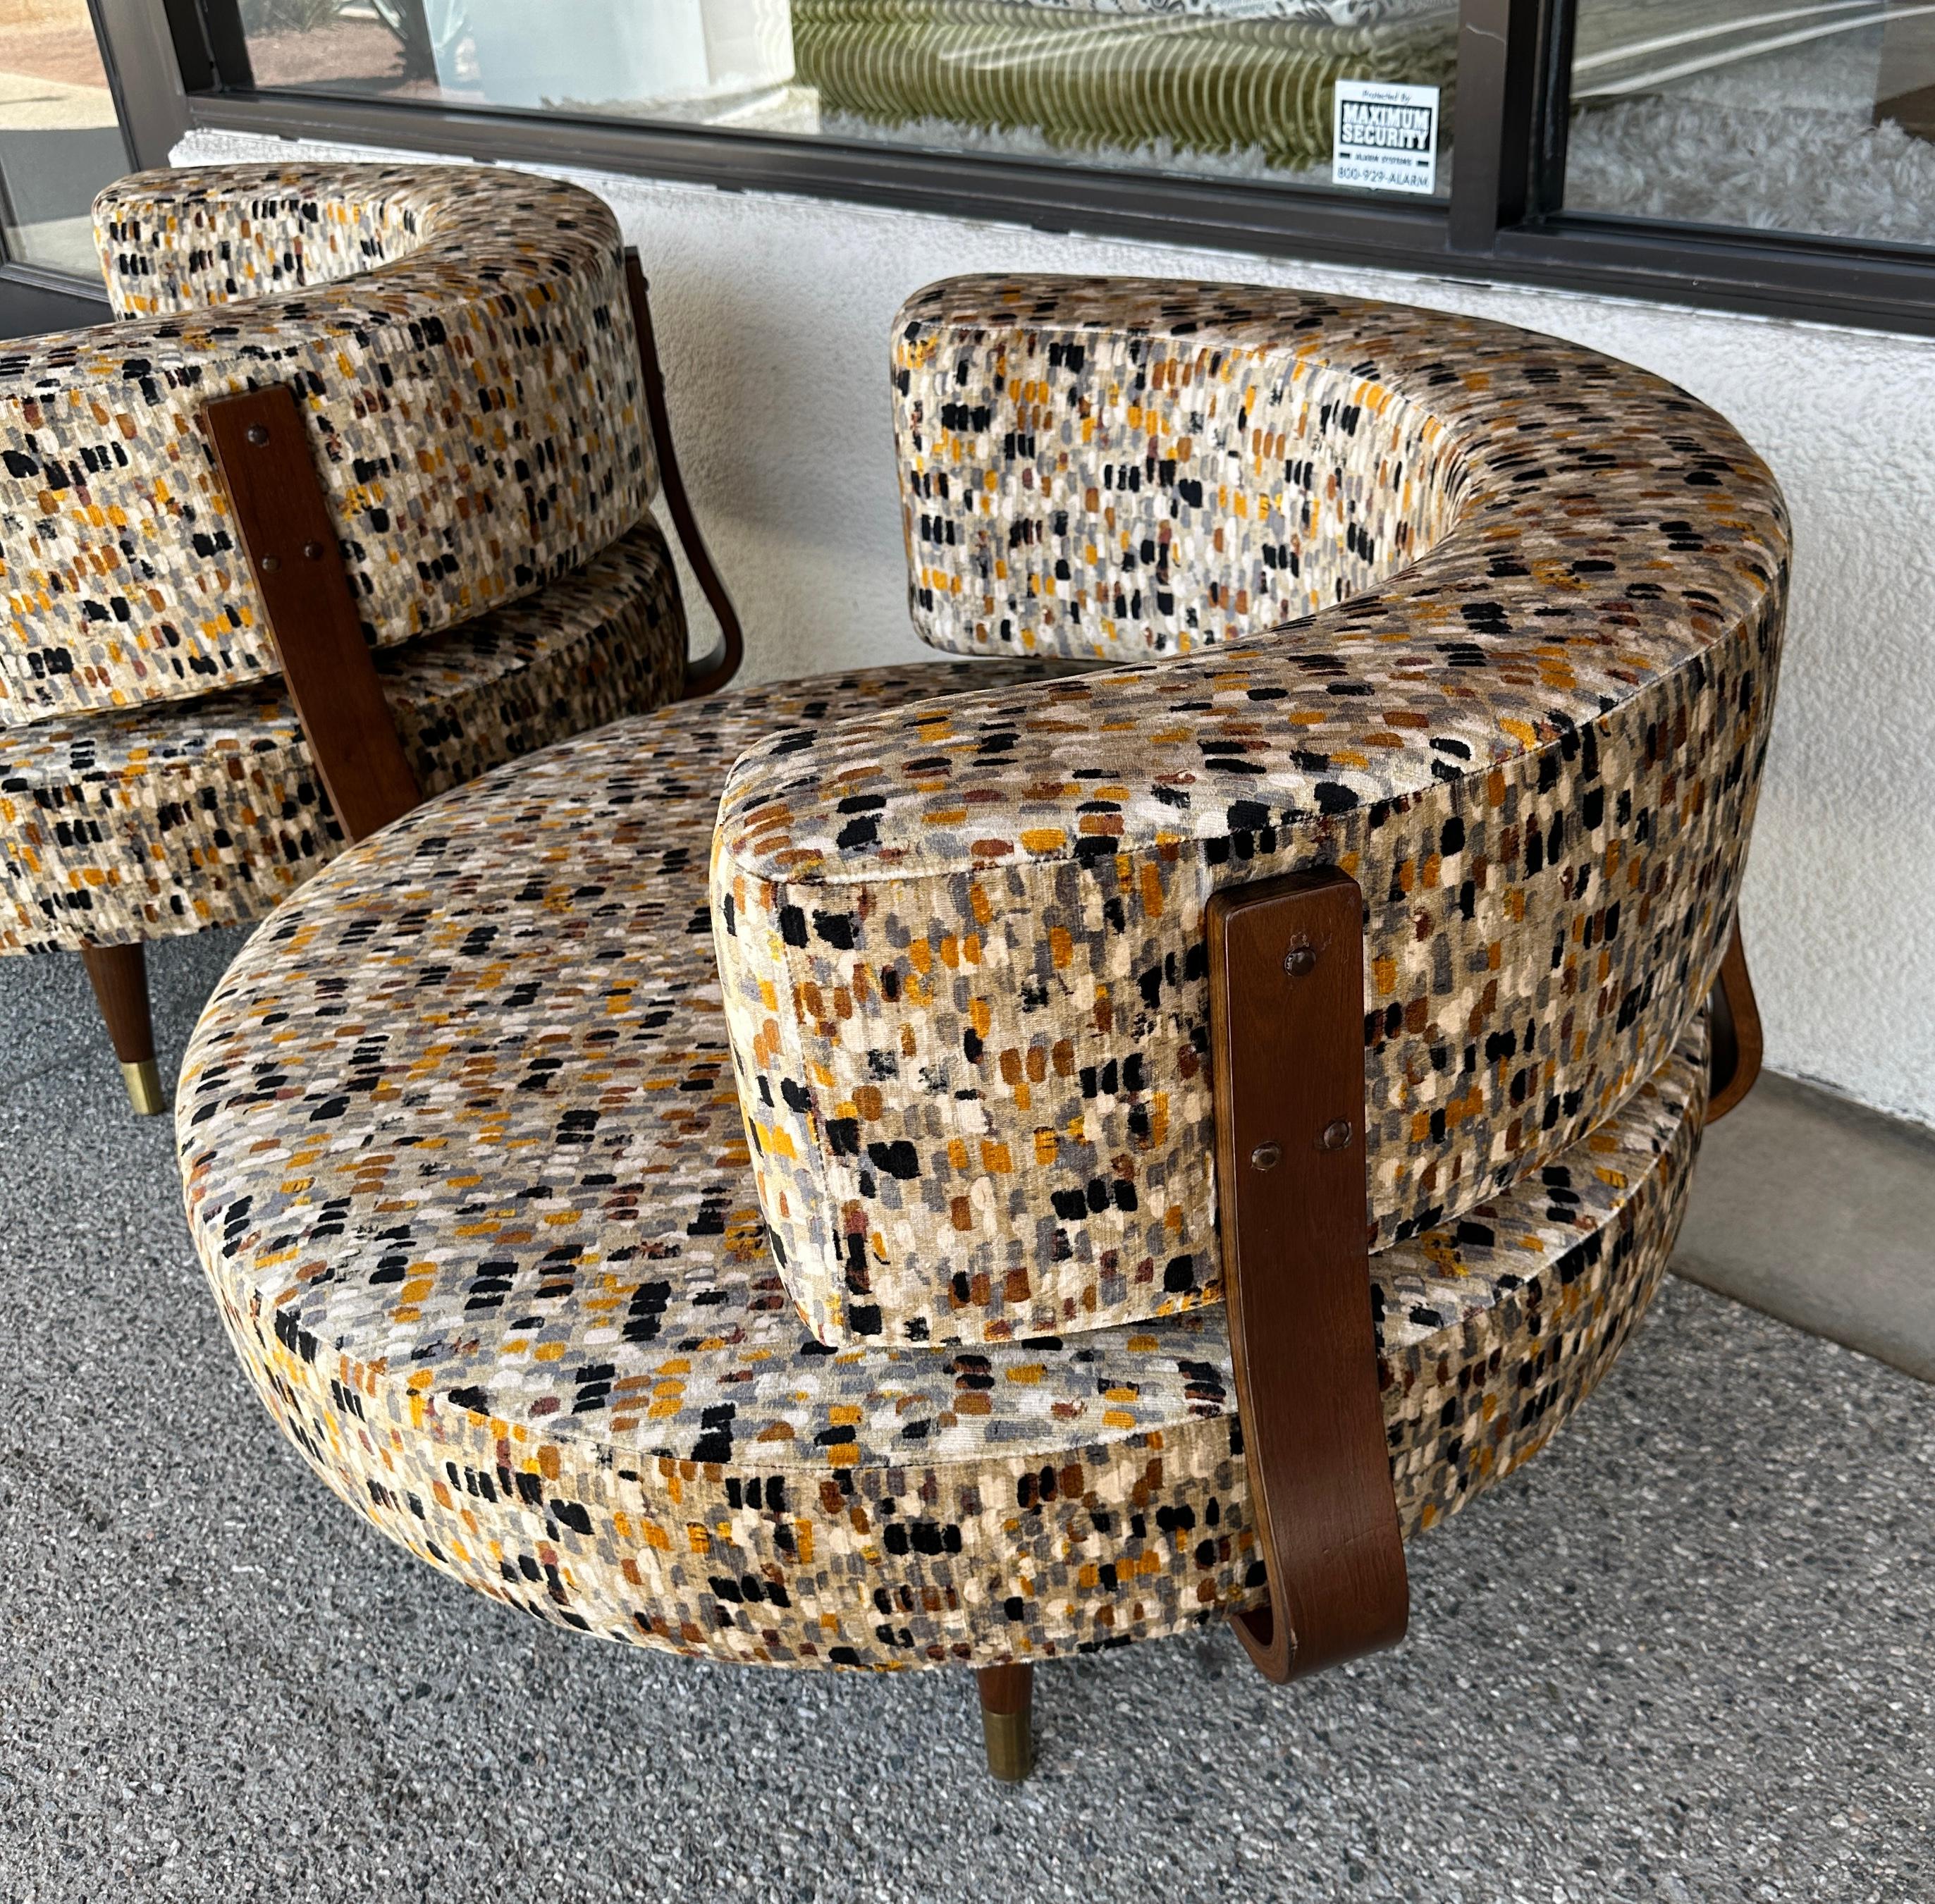 Ein fabelhaftes Paar Adrian Pearsall großer runder Drehstühle in Übergröße, neu bezogen mit einem schönen bedruckten Baumwollsamtstoff von Romo namens Murano Anise. Es ist ein Baumwoll-Viskose-Gemisch. Die Stühle sind komplett drehbar. Da sie so